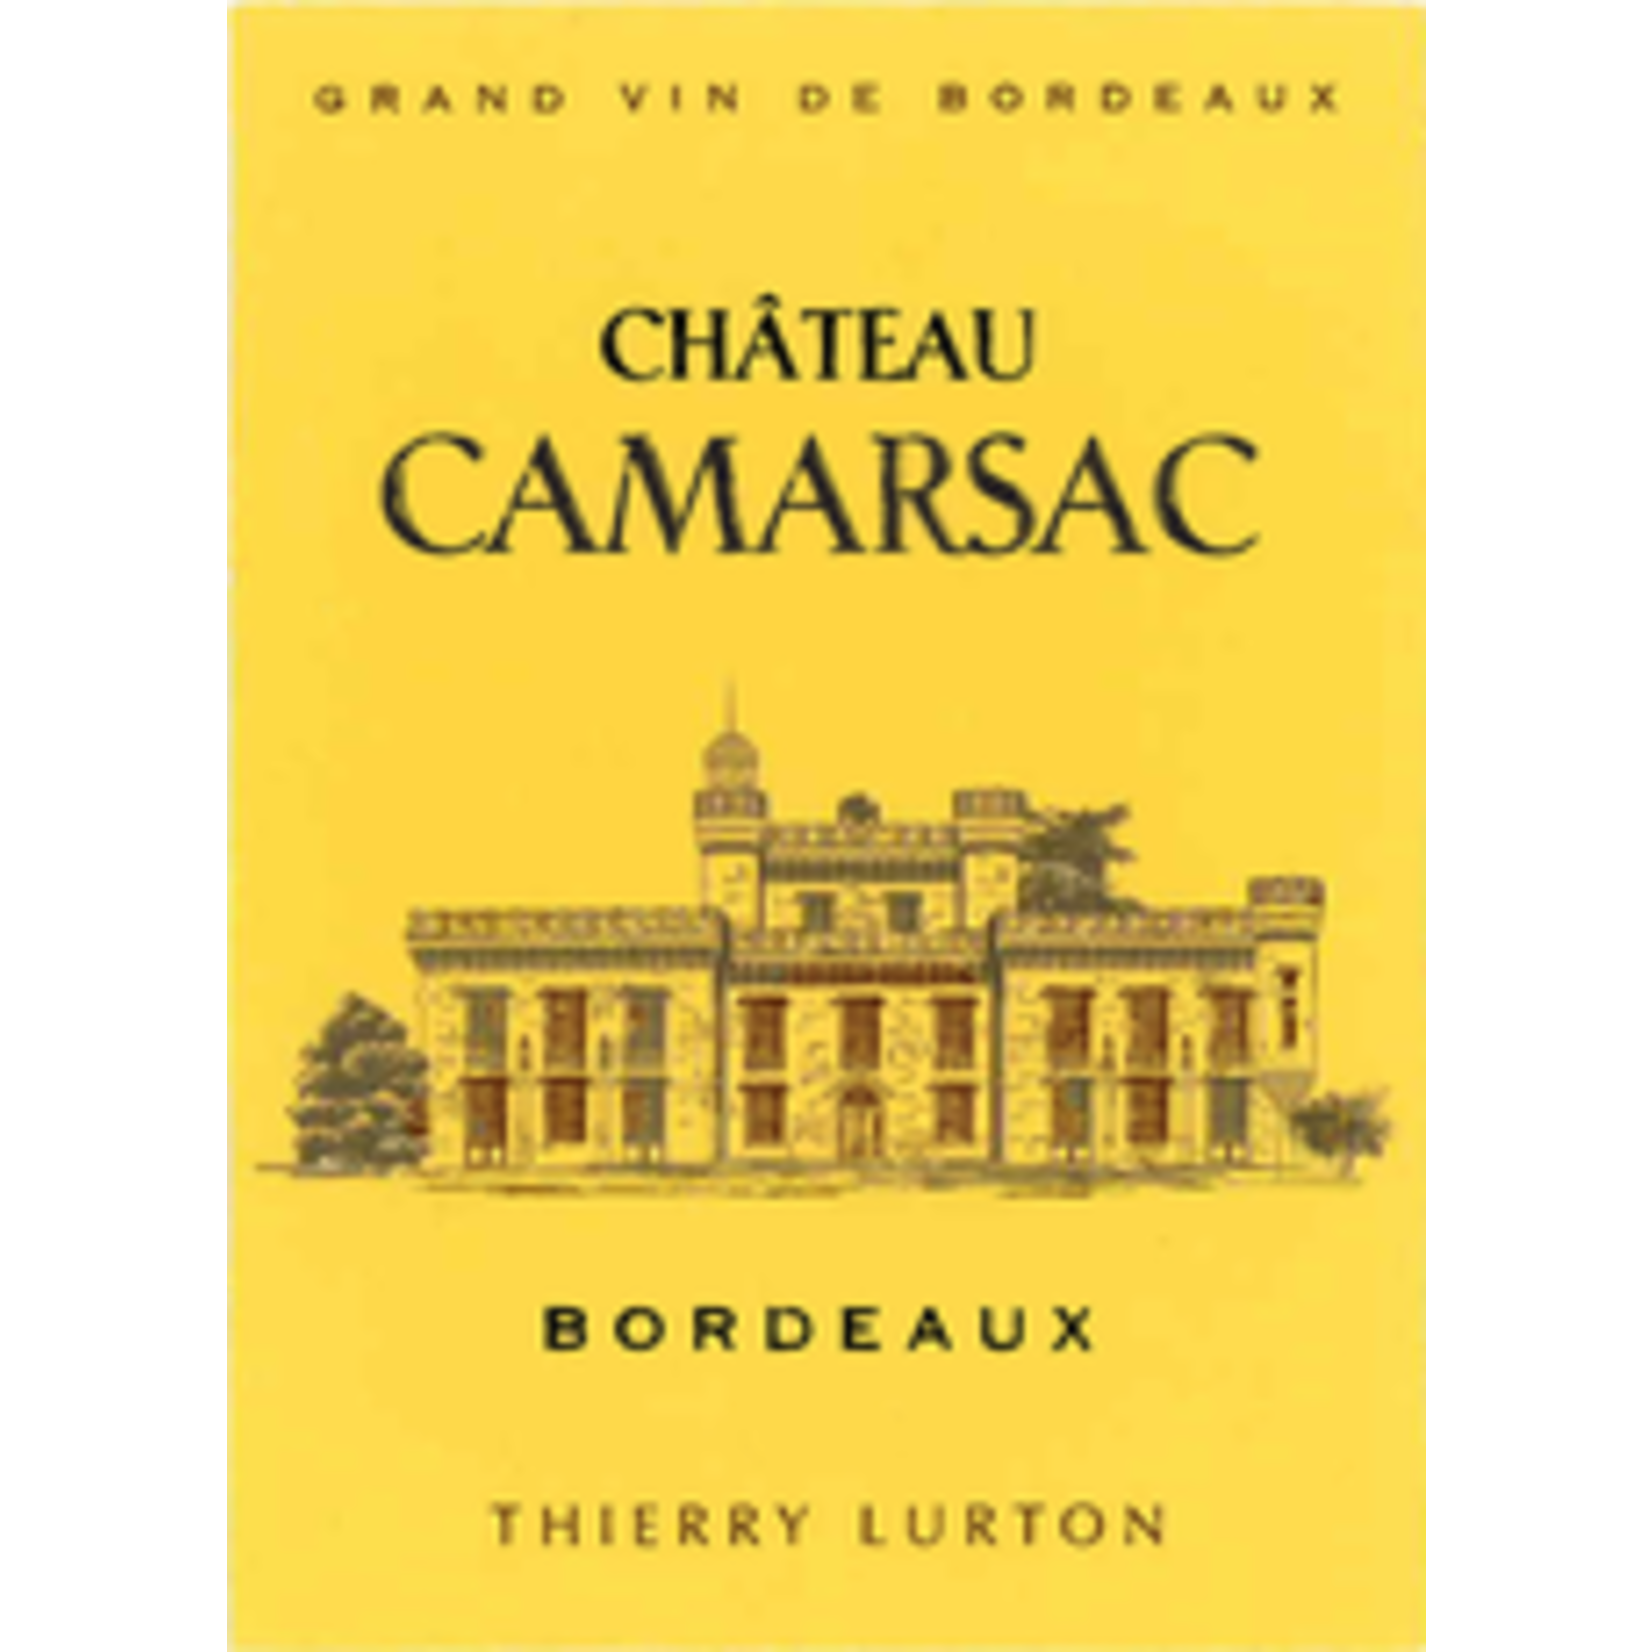 Wine Chateau de Camarsac Bordeaux 2018